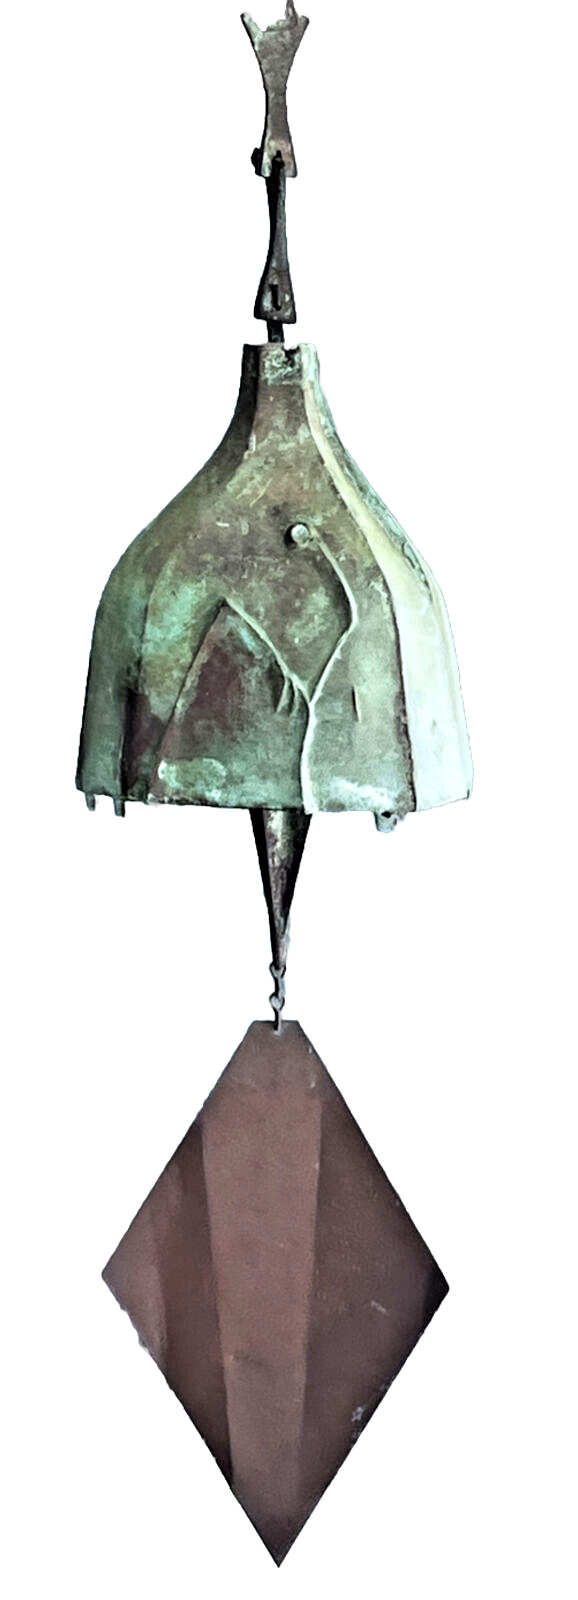 34” Soleri Cosanti Arcosanti Bronze Wind Bell Chime Vtg Modern Mcm Sculpture Old